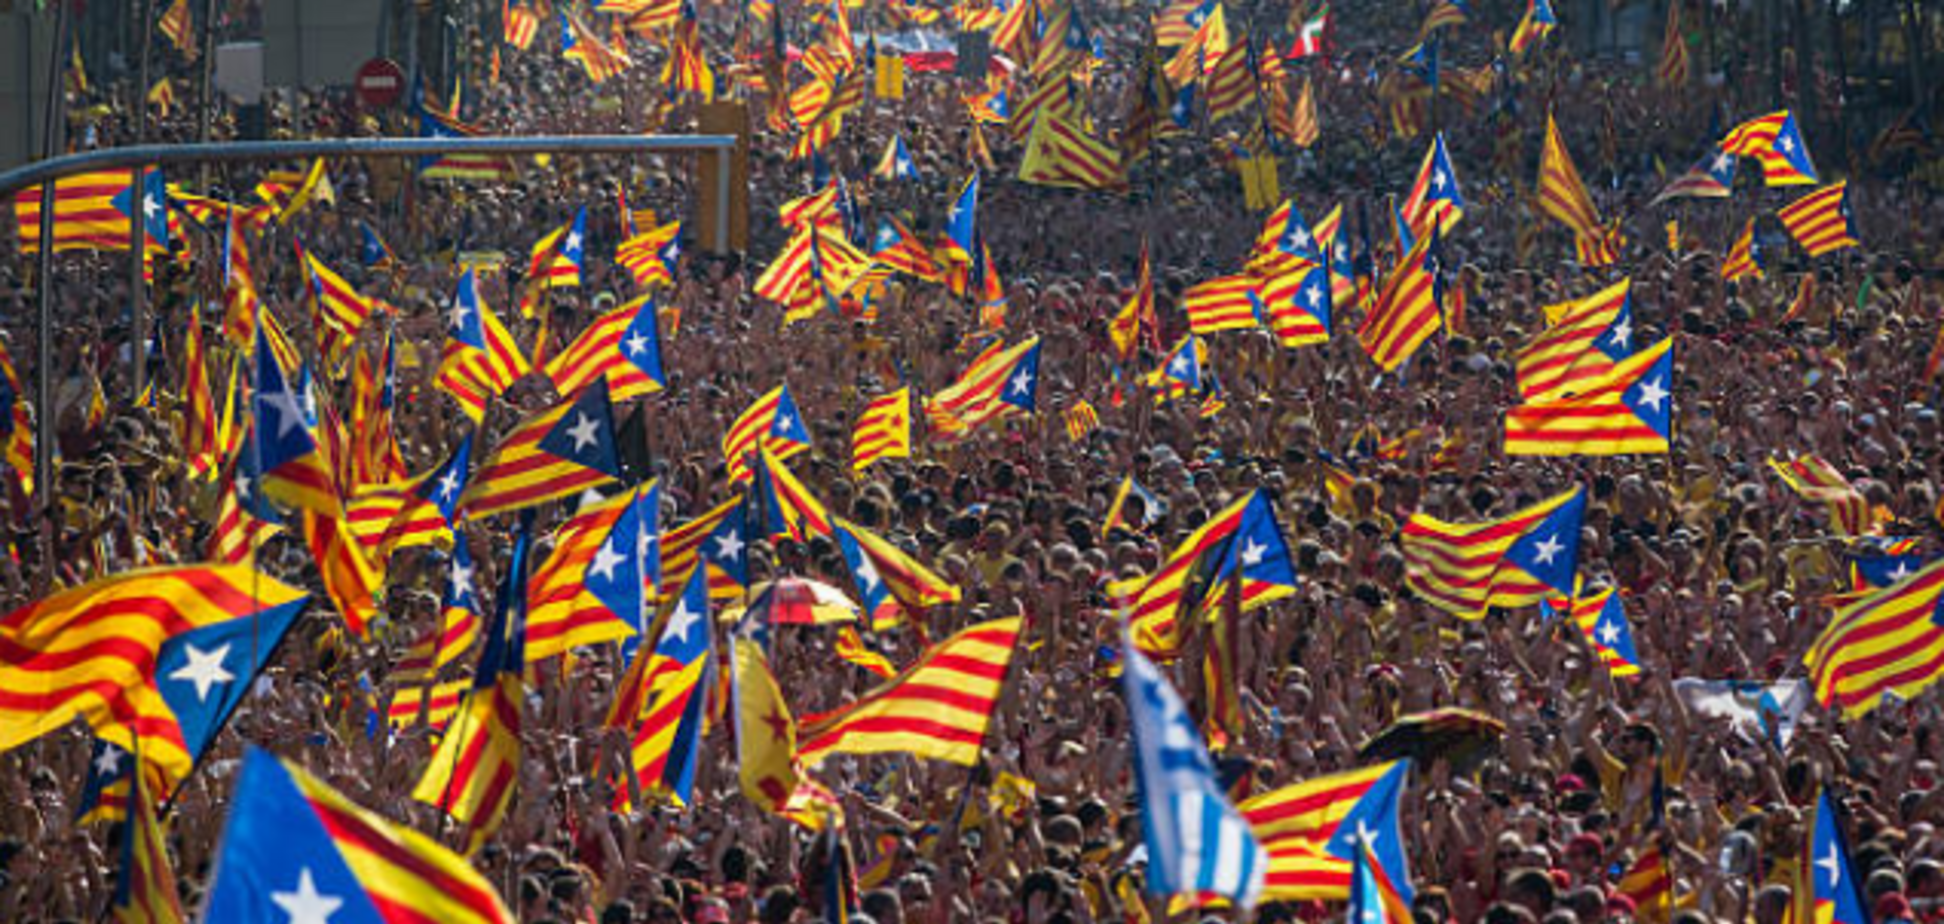 Мадрид пошел на обострение: Барселона вышла на многотысячный митинг за независимость